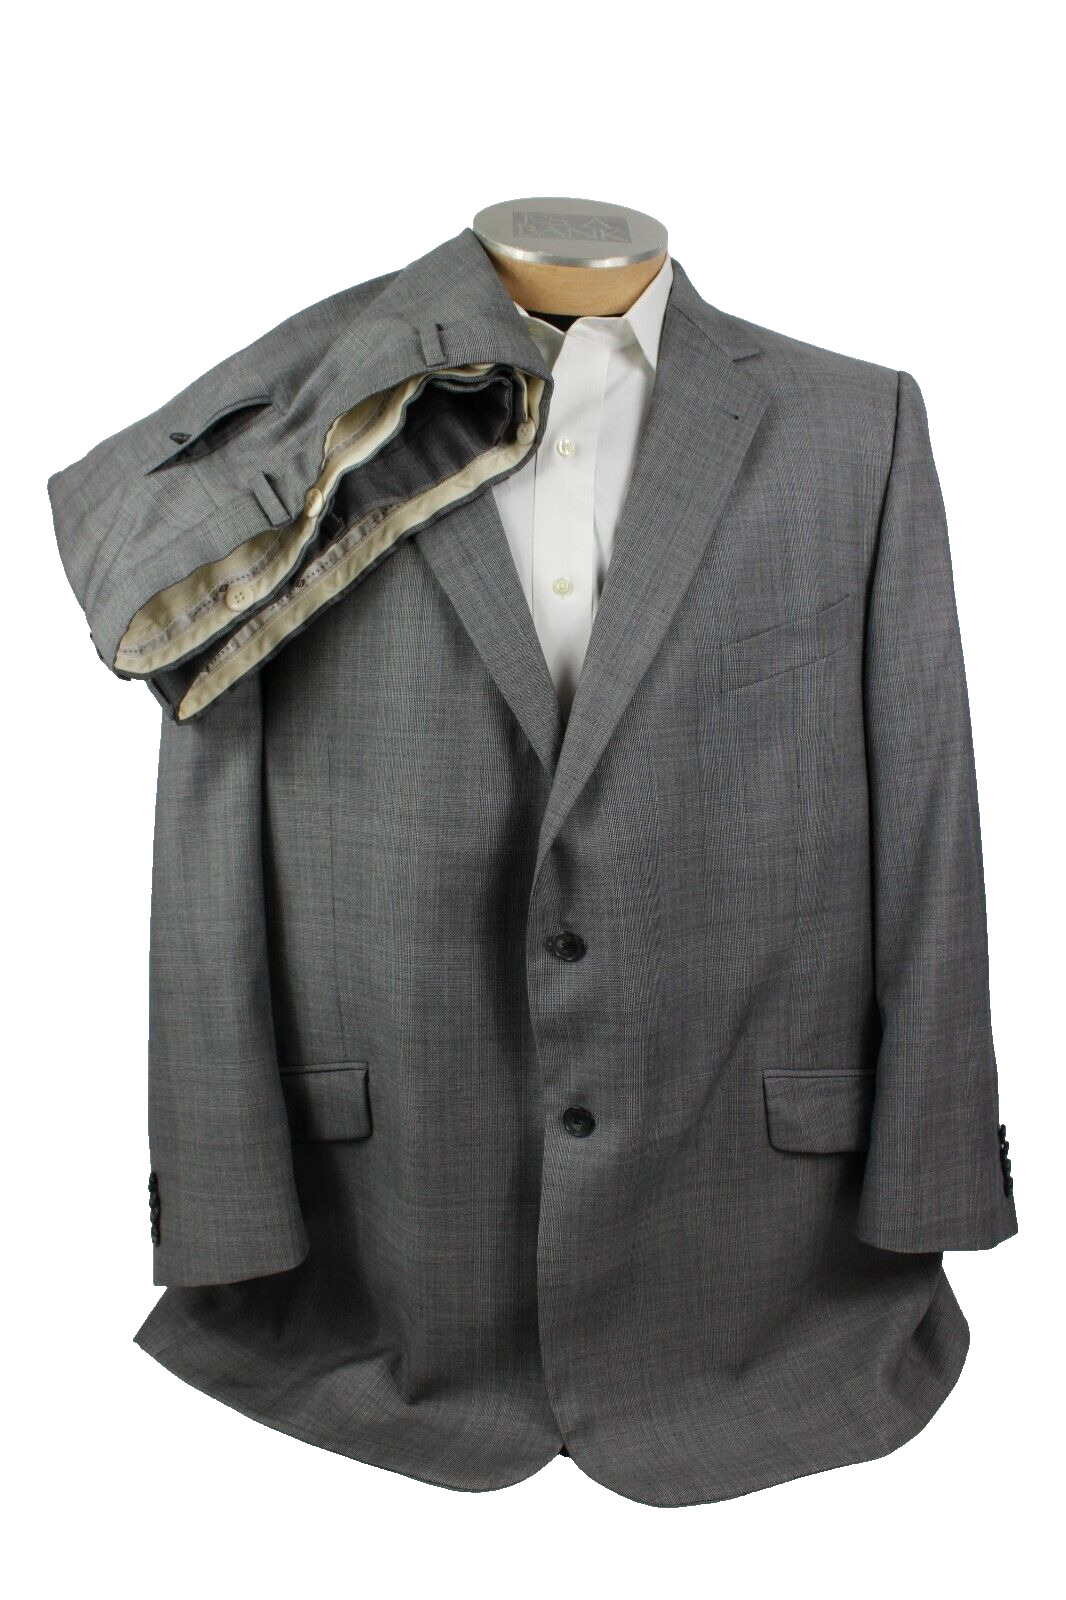 Joseph Abboud Mens Suit 50R Gray 2 Piece 2 Button… - image 1